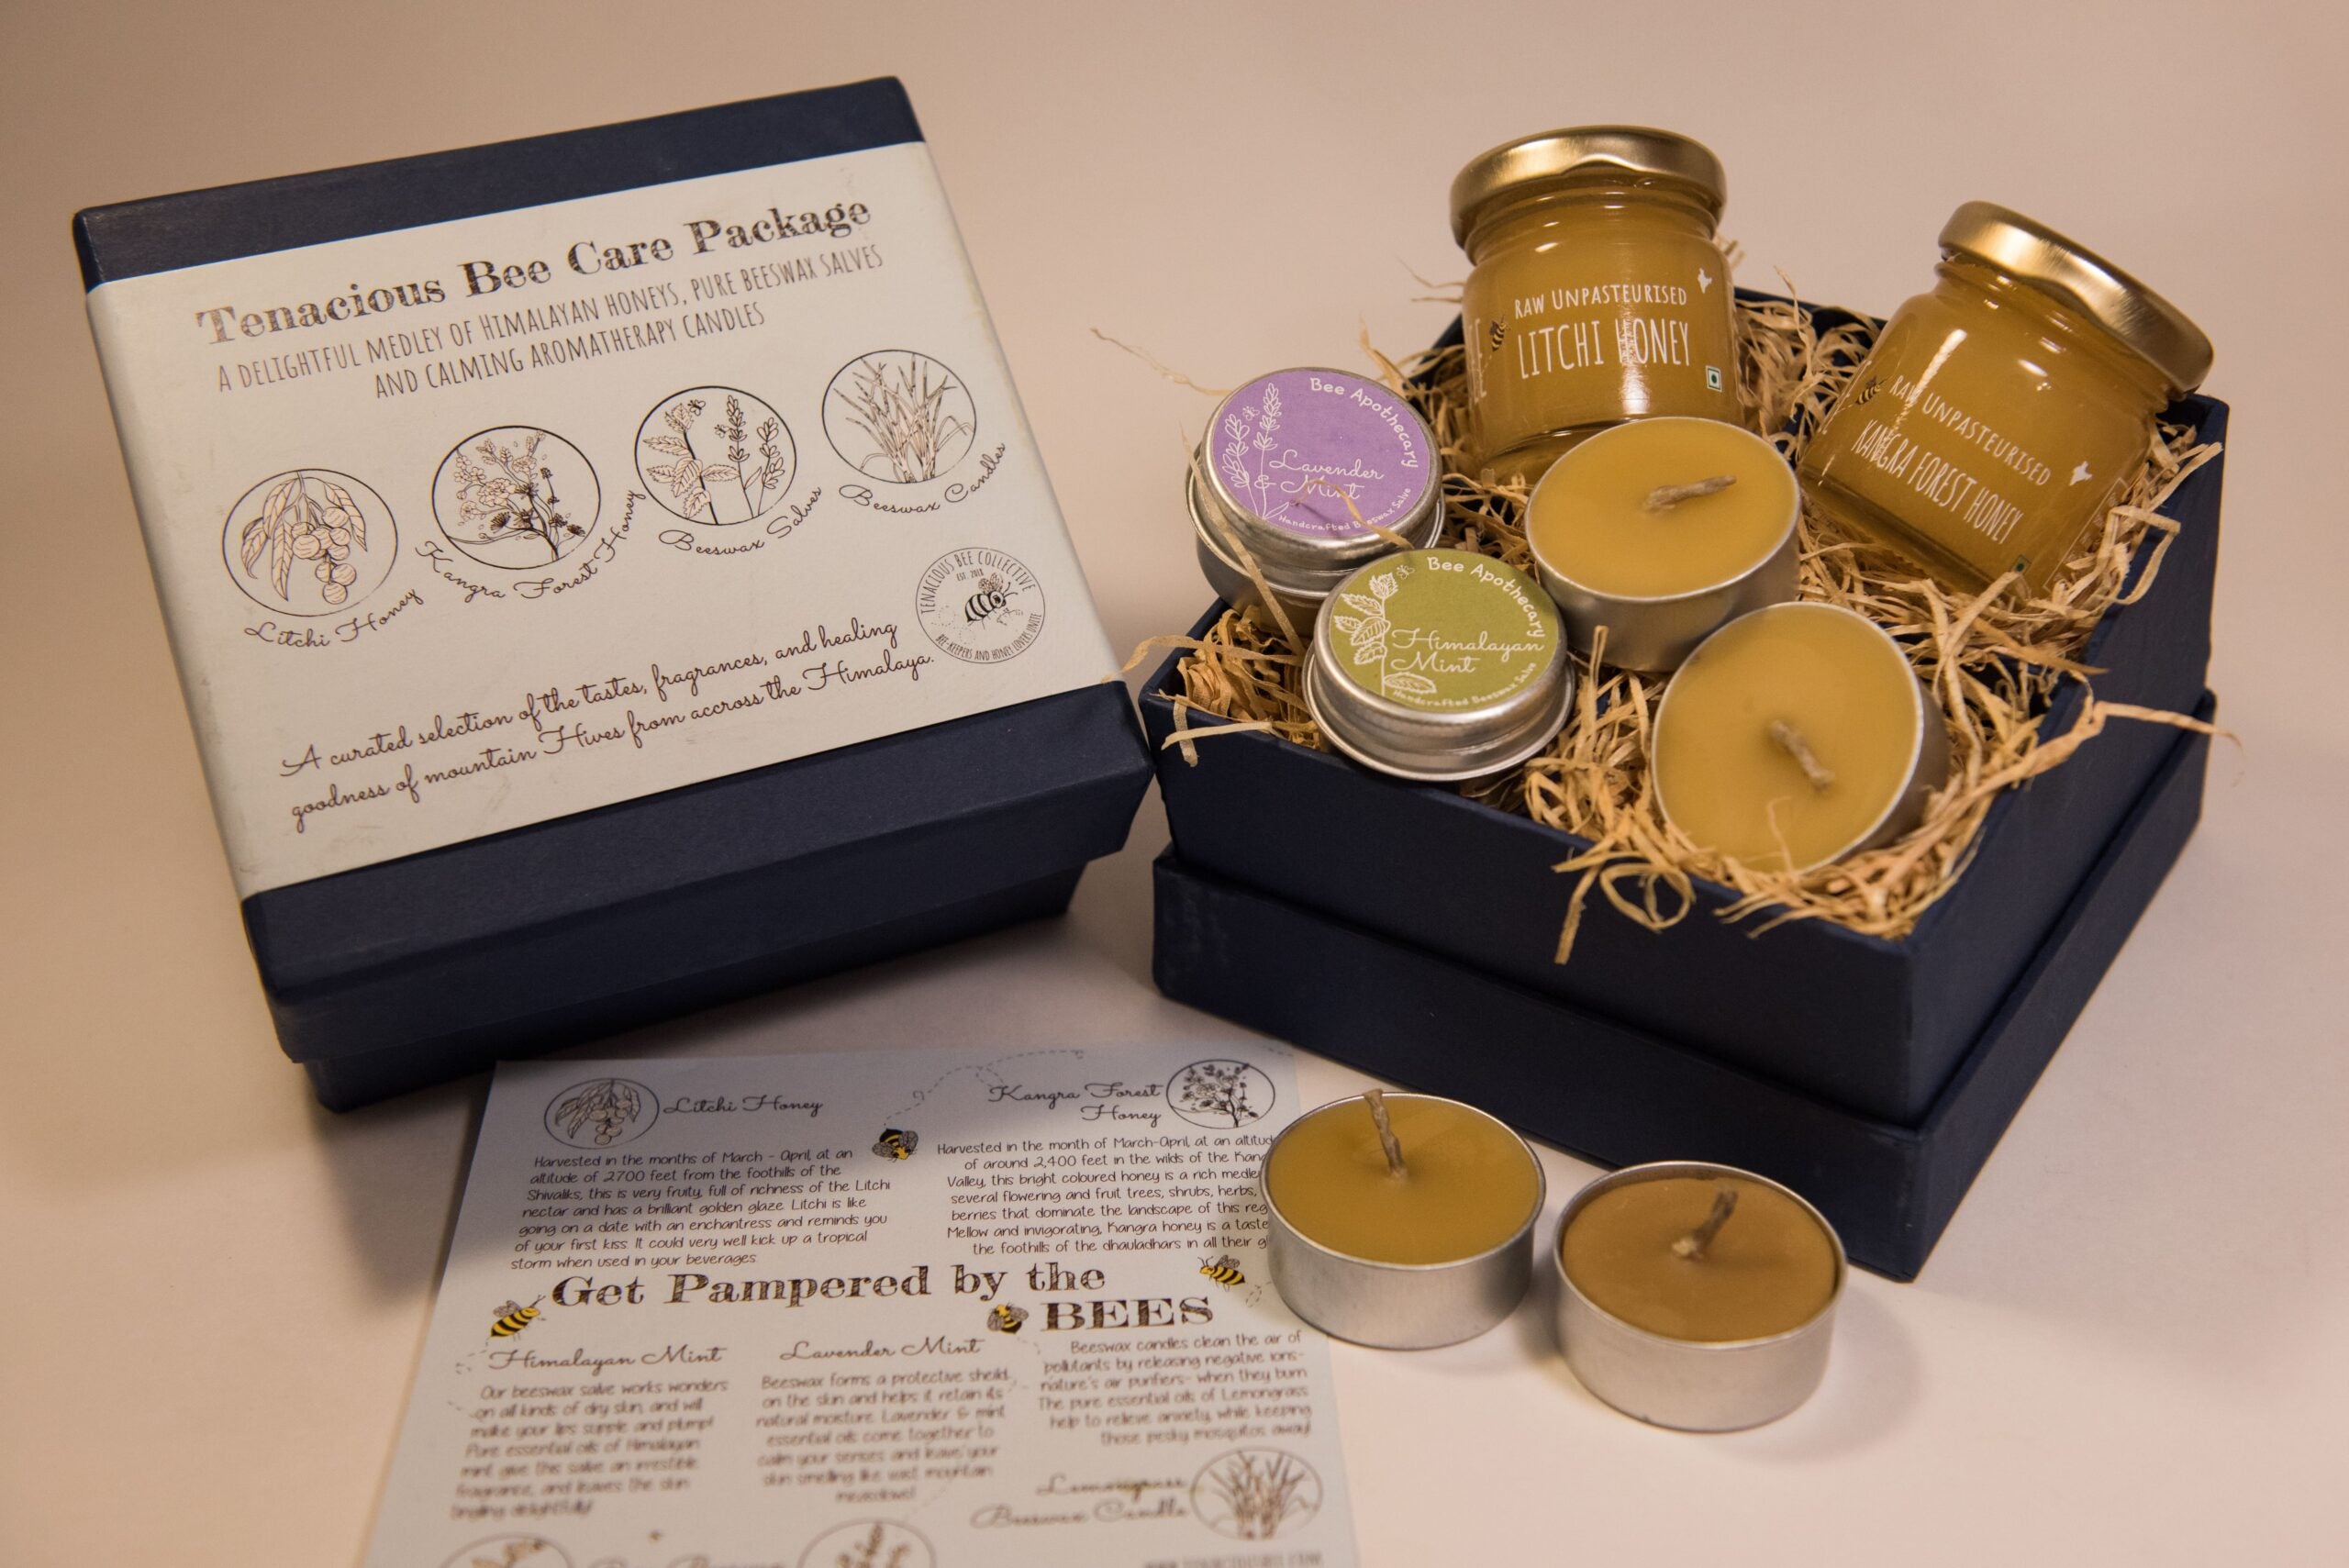 Tenacious Bee Care Package | Himalayan honey, Beeswax Salves, Candles